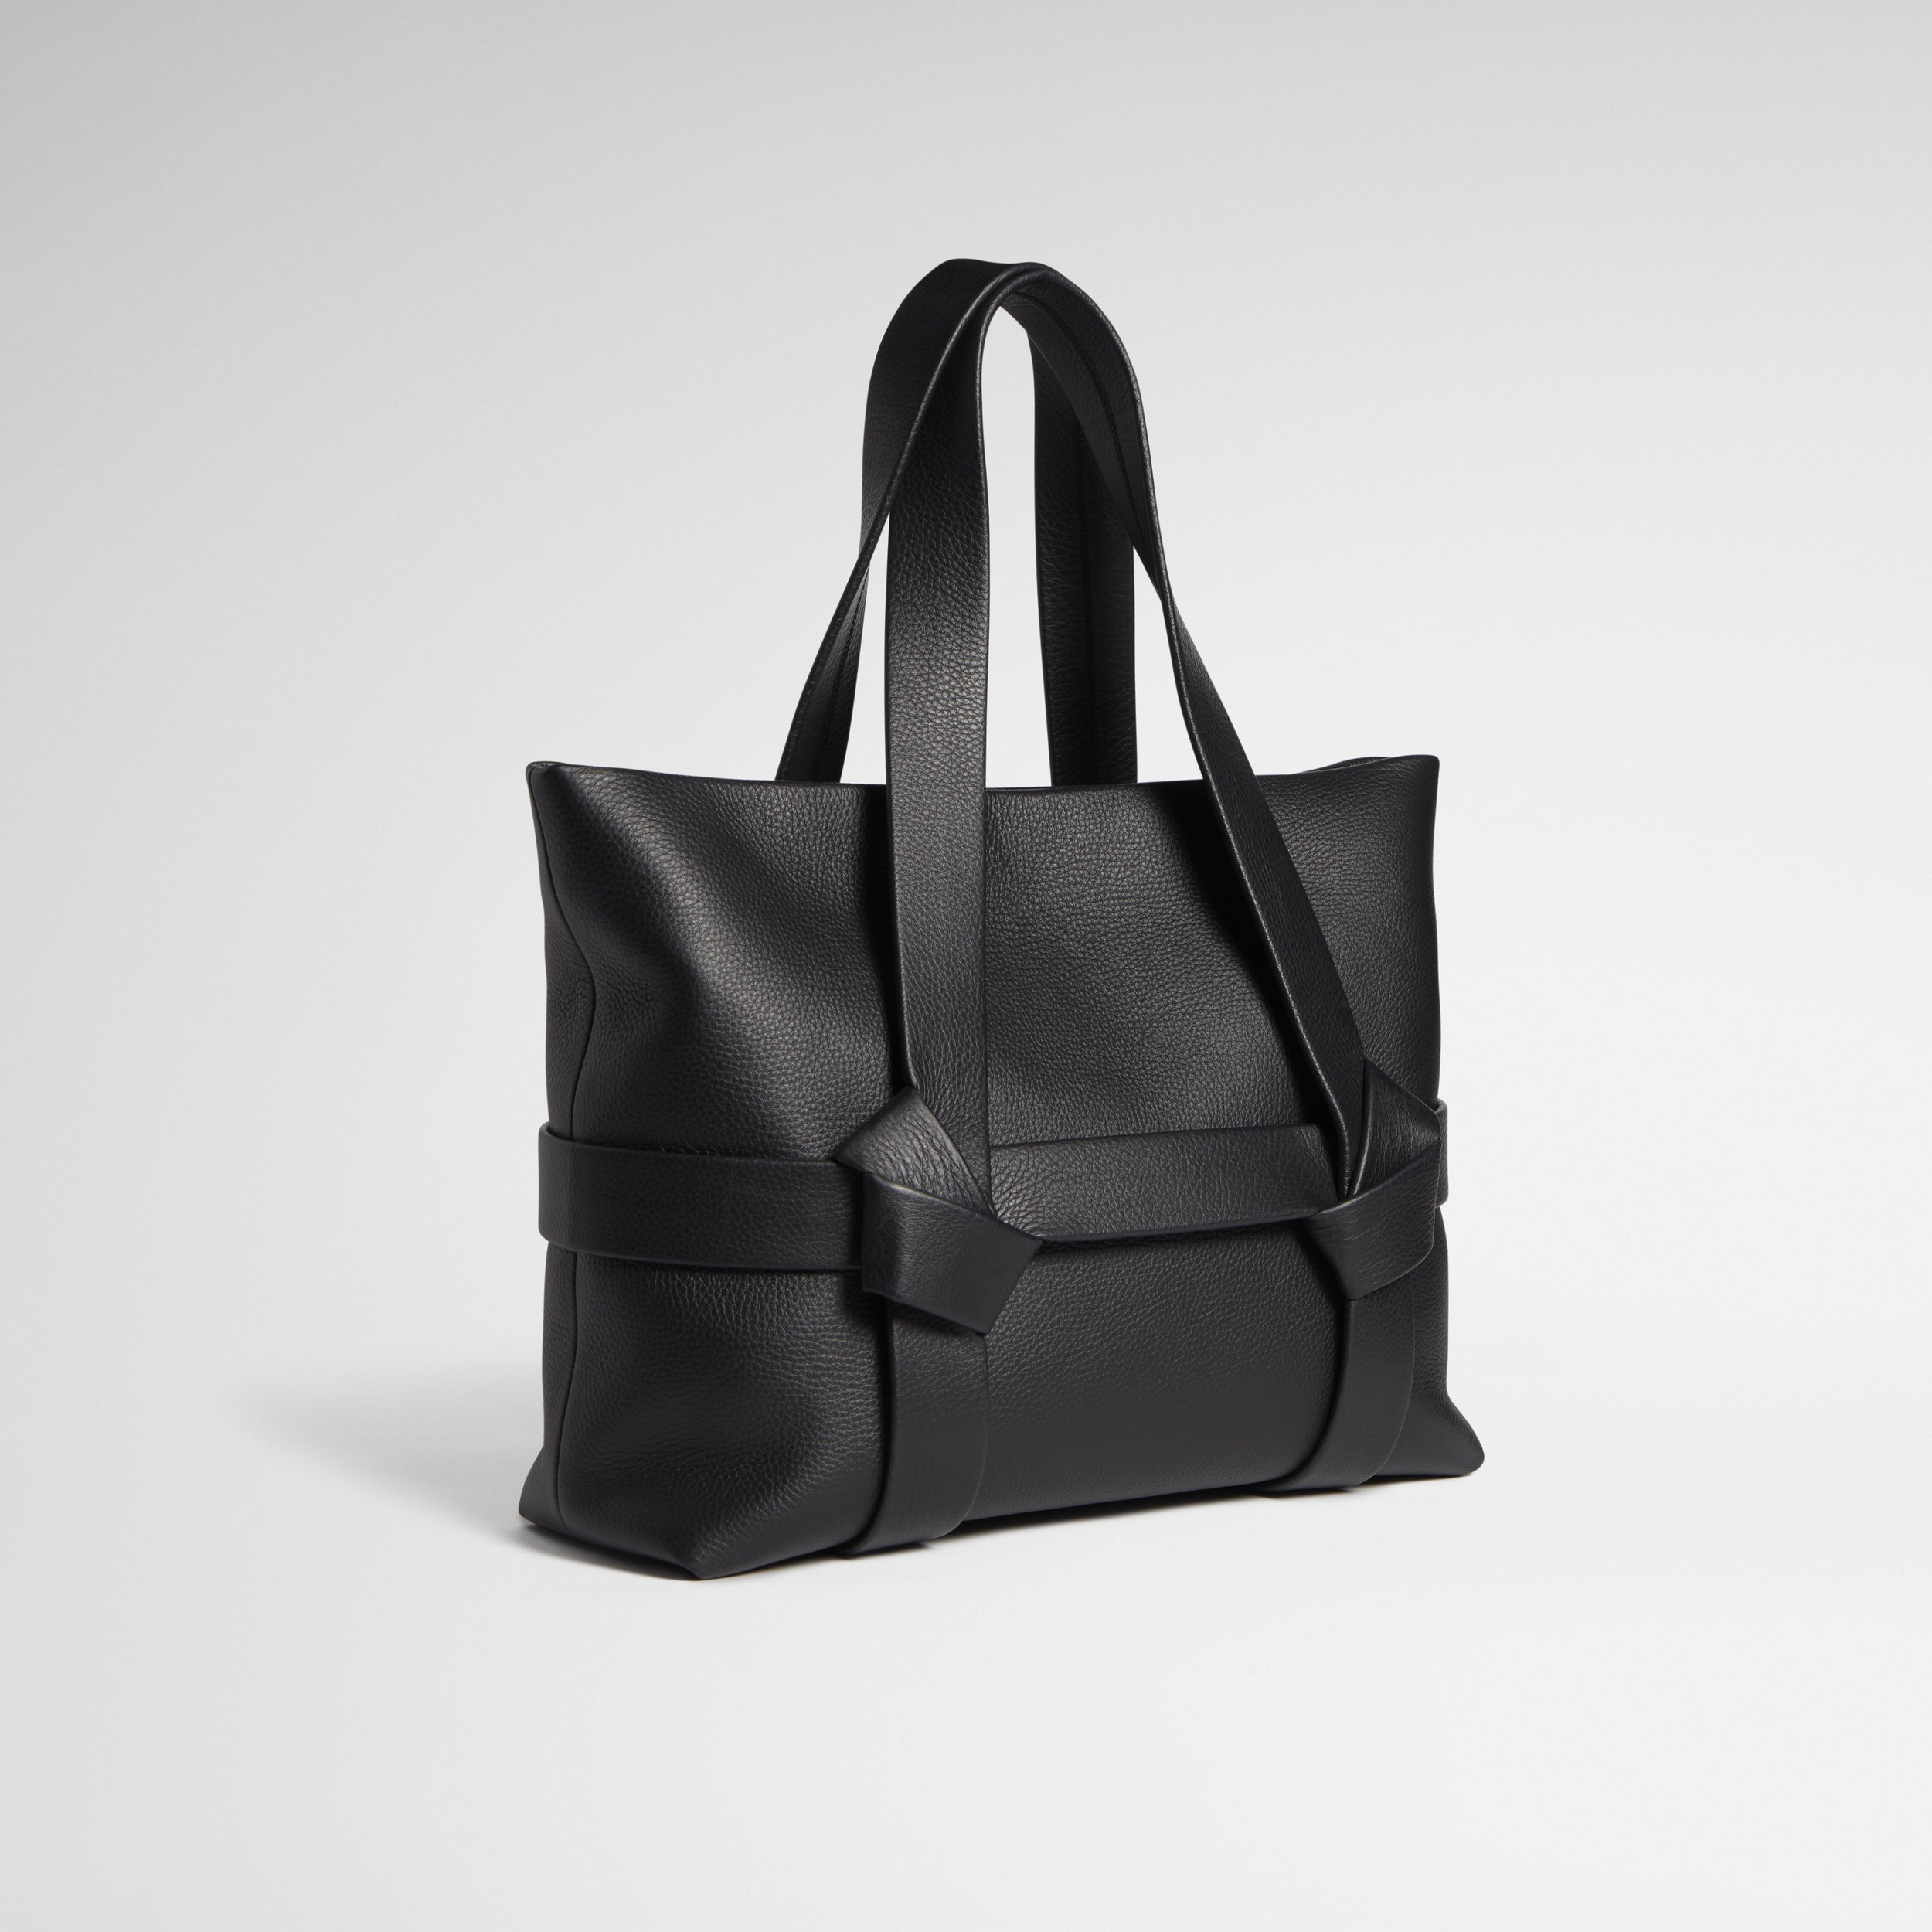 NJR050_Obi Bag & Strap_black bag with black strap_C.jpg